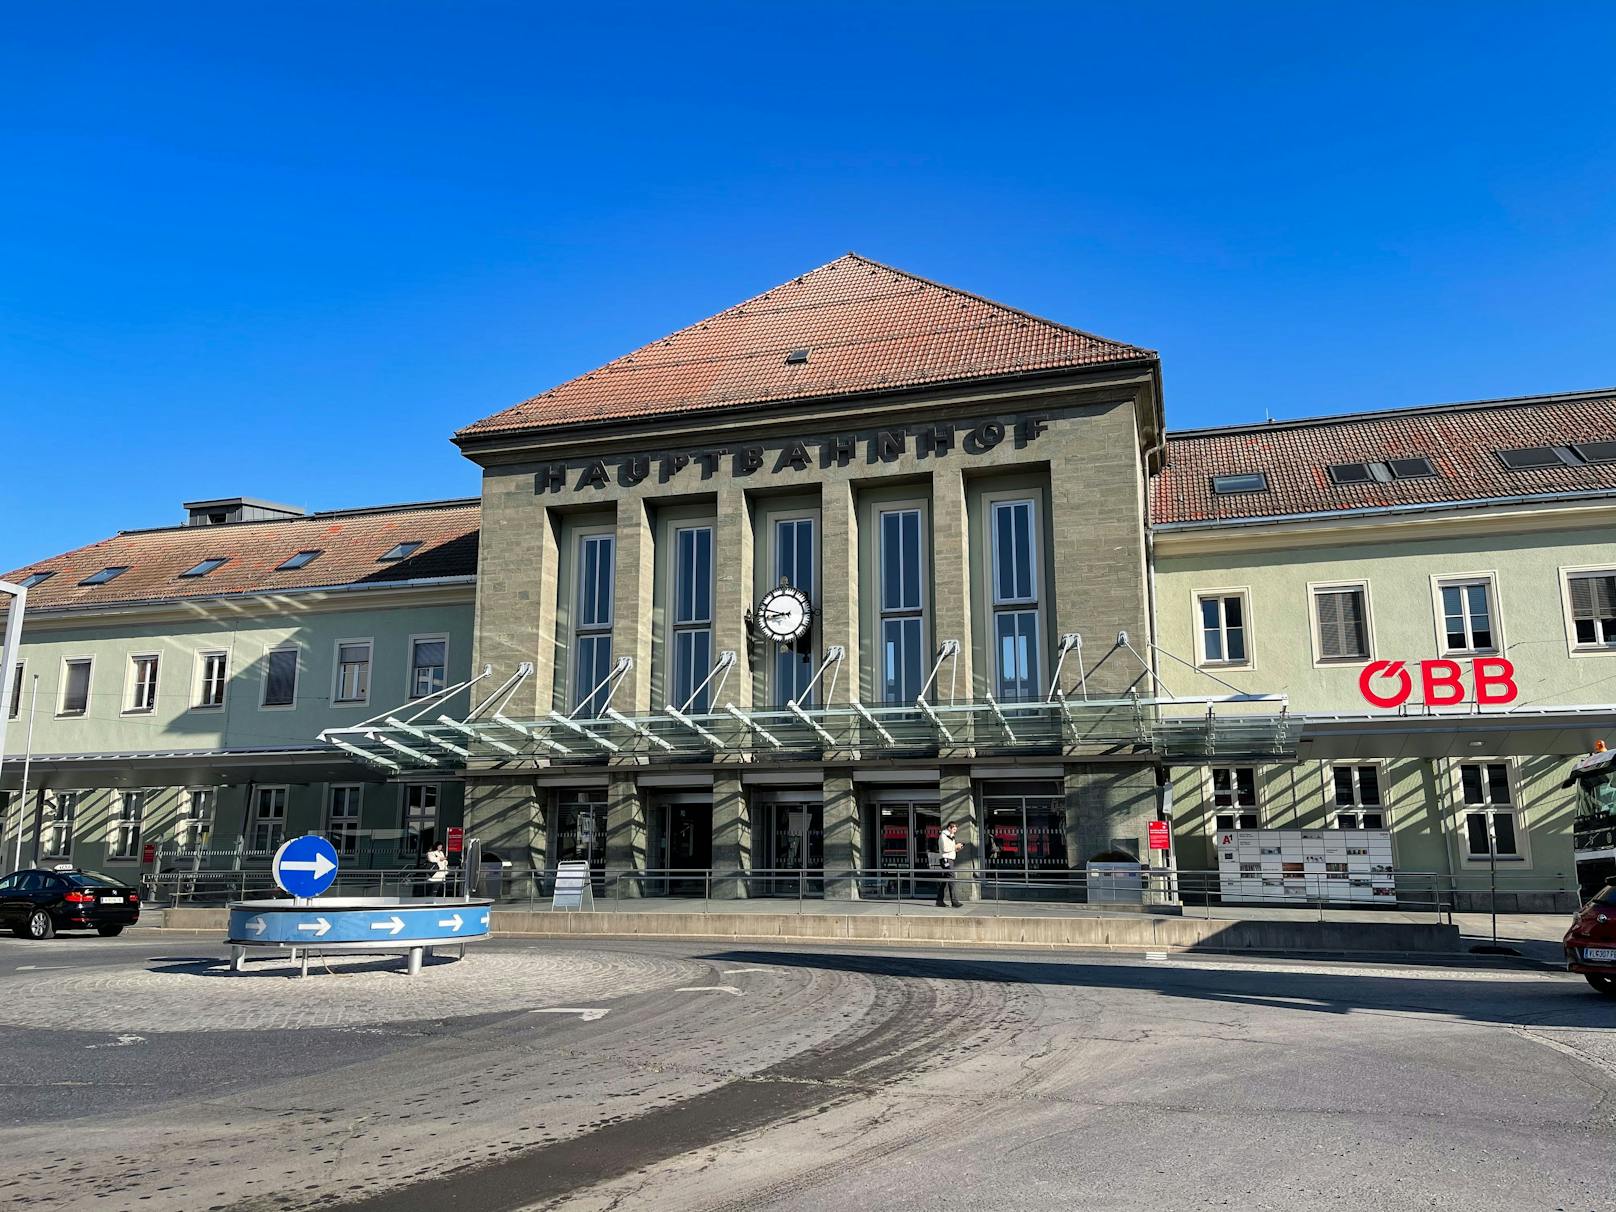 Am Villacher Hauptbahnhof kam es am Donnerstagmorgen zu einem Polizeieinsatz. Archivbild.